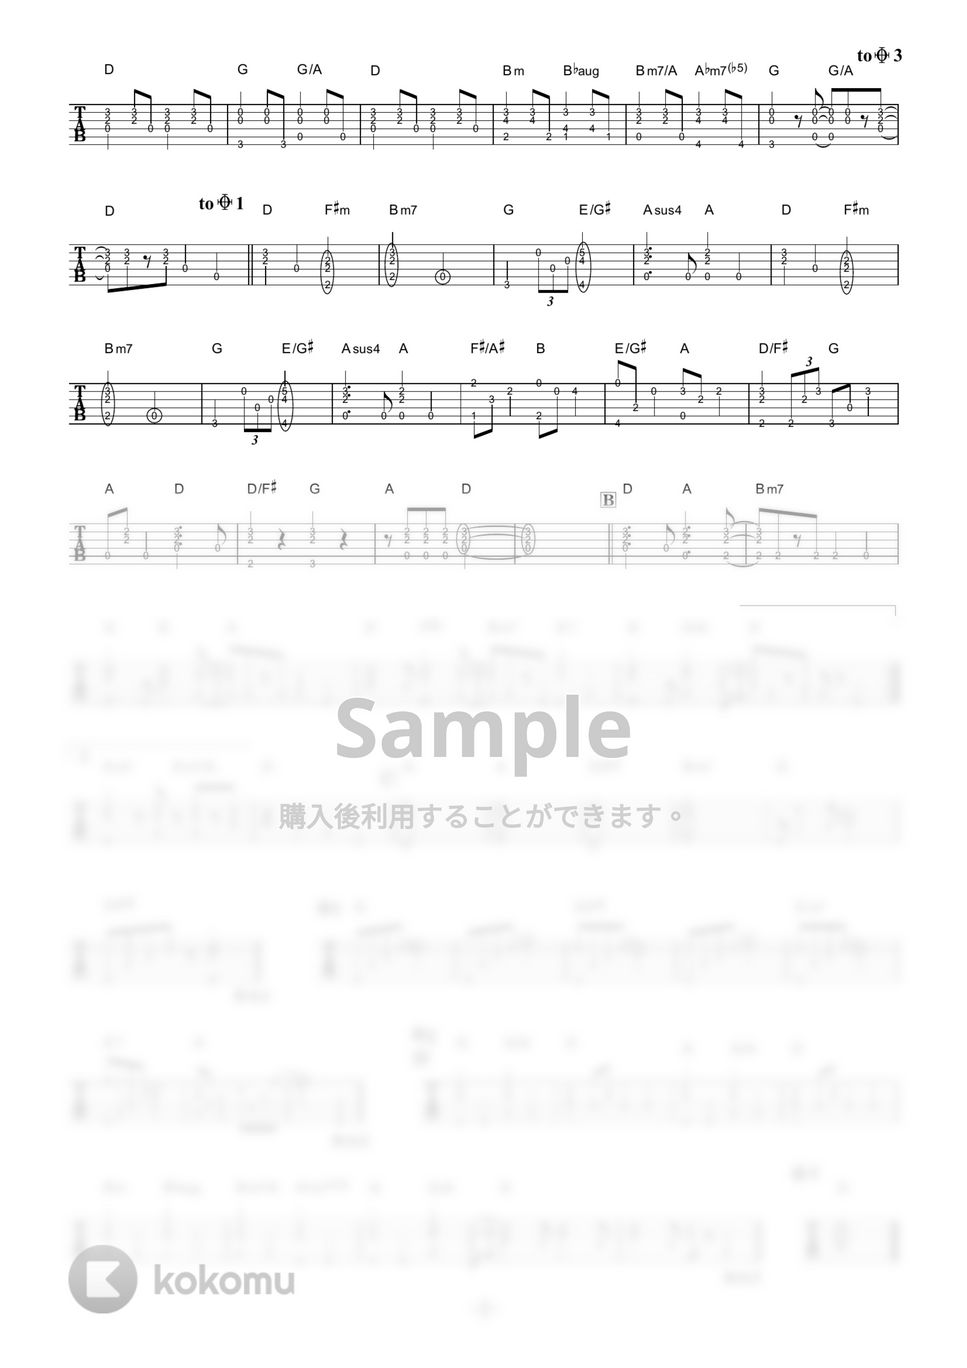 SEKAI NO OWARI - RPG (ギター伴奏/イントロ・間奏ソロギター) by 伴奏屋TAB譜